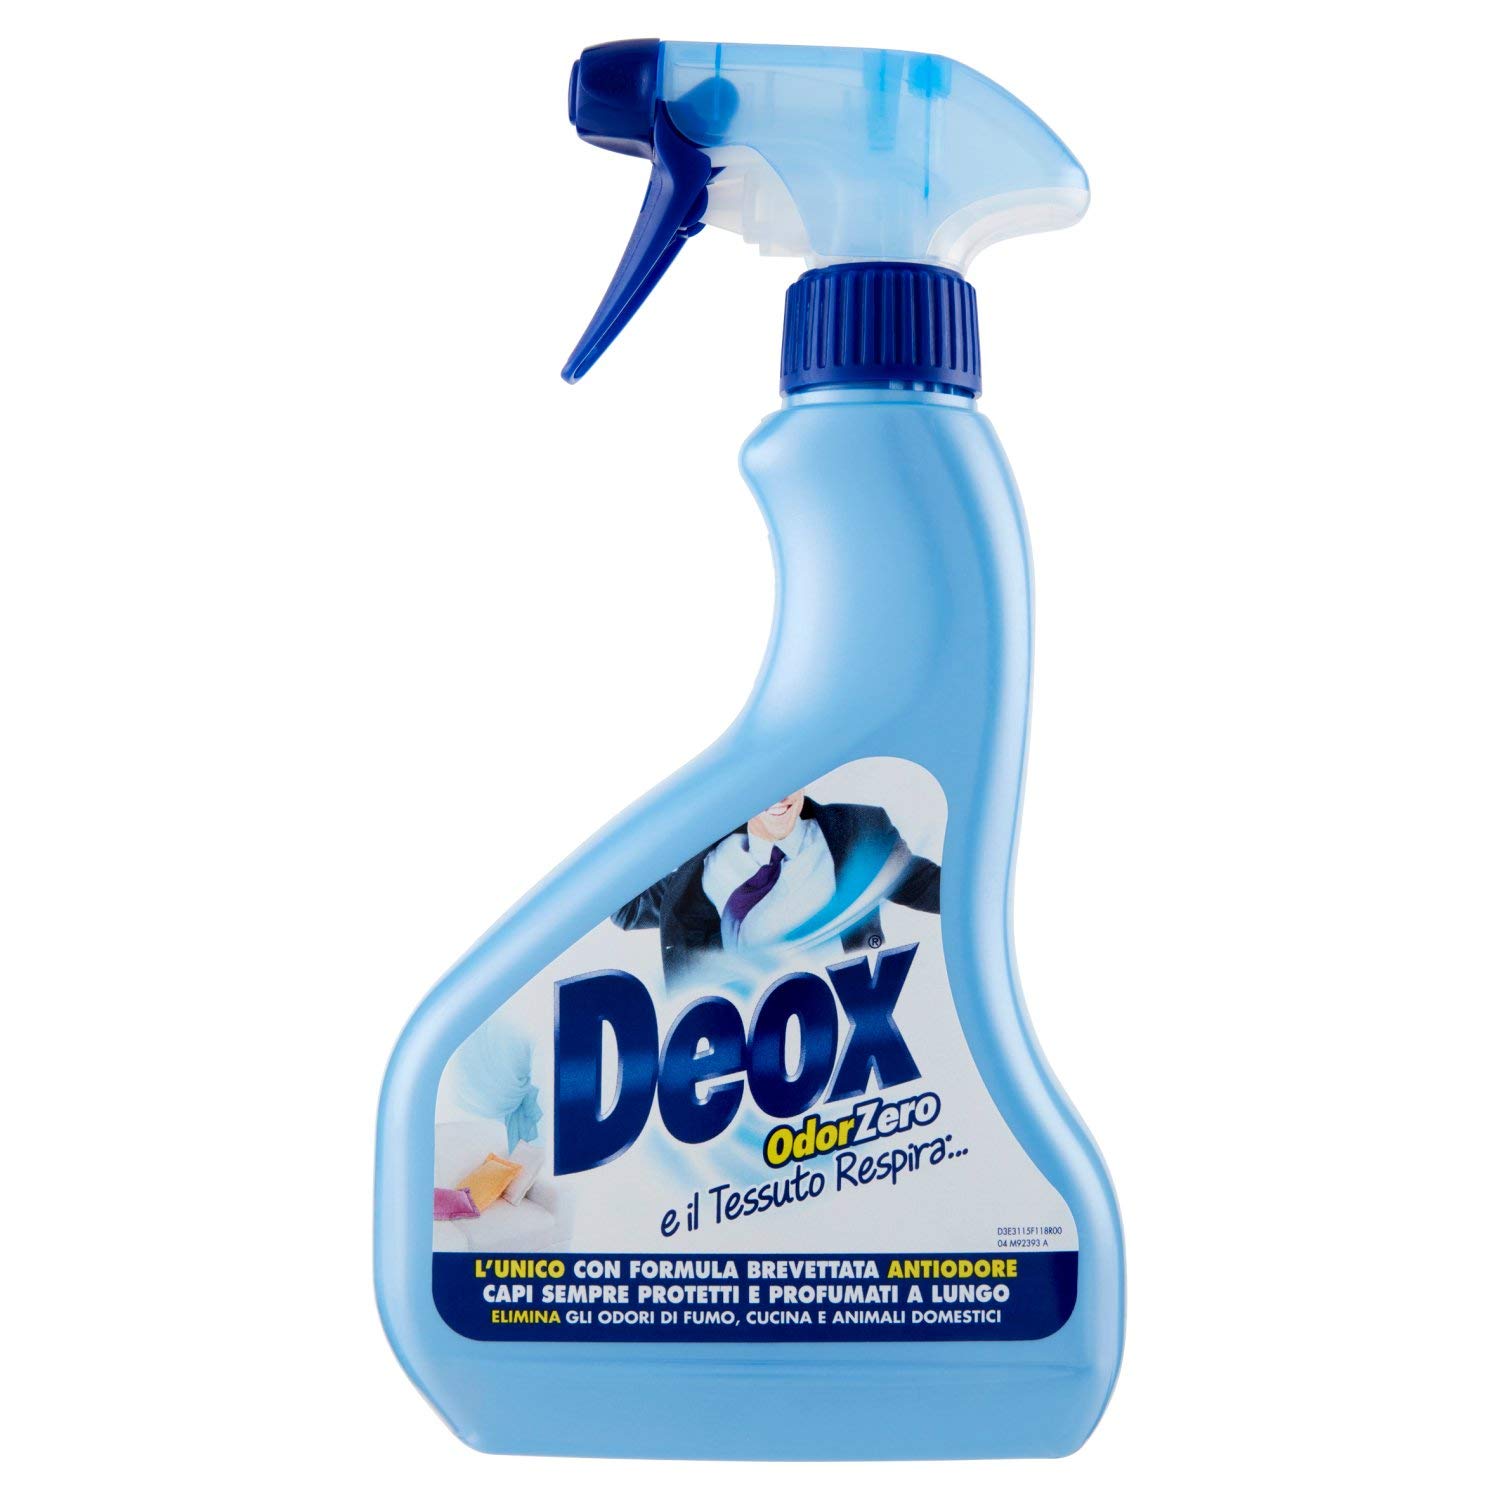 Deox deodorante spray odorzero ml.500